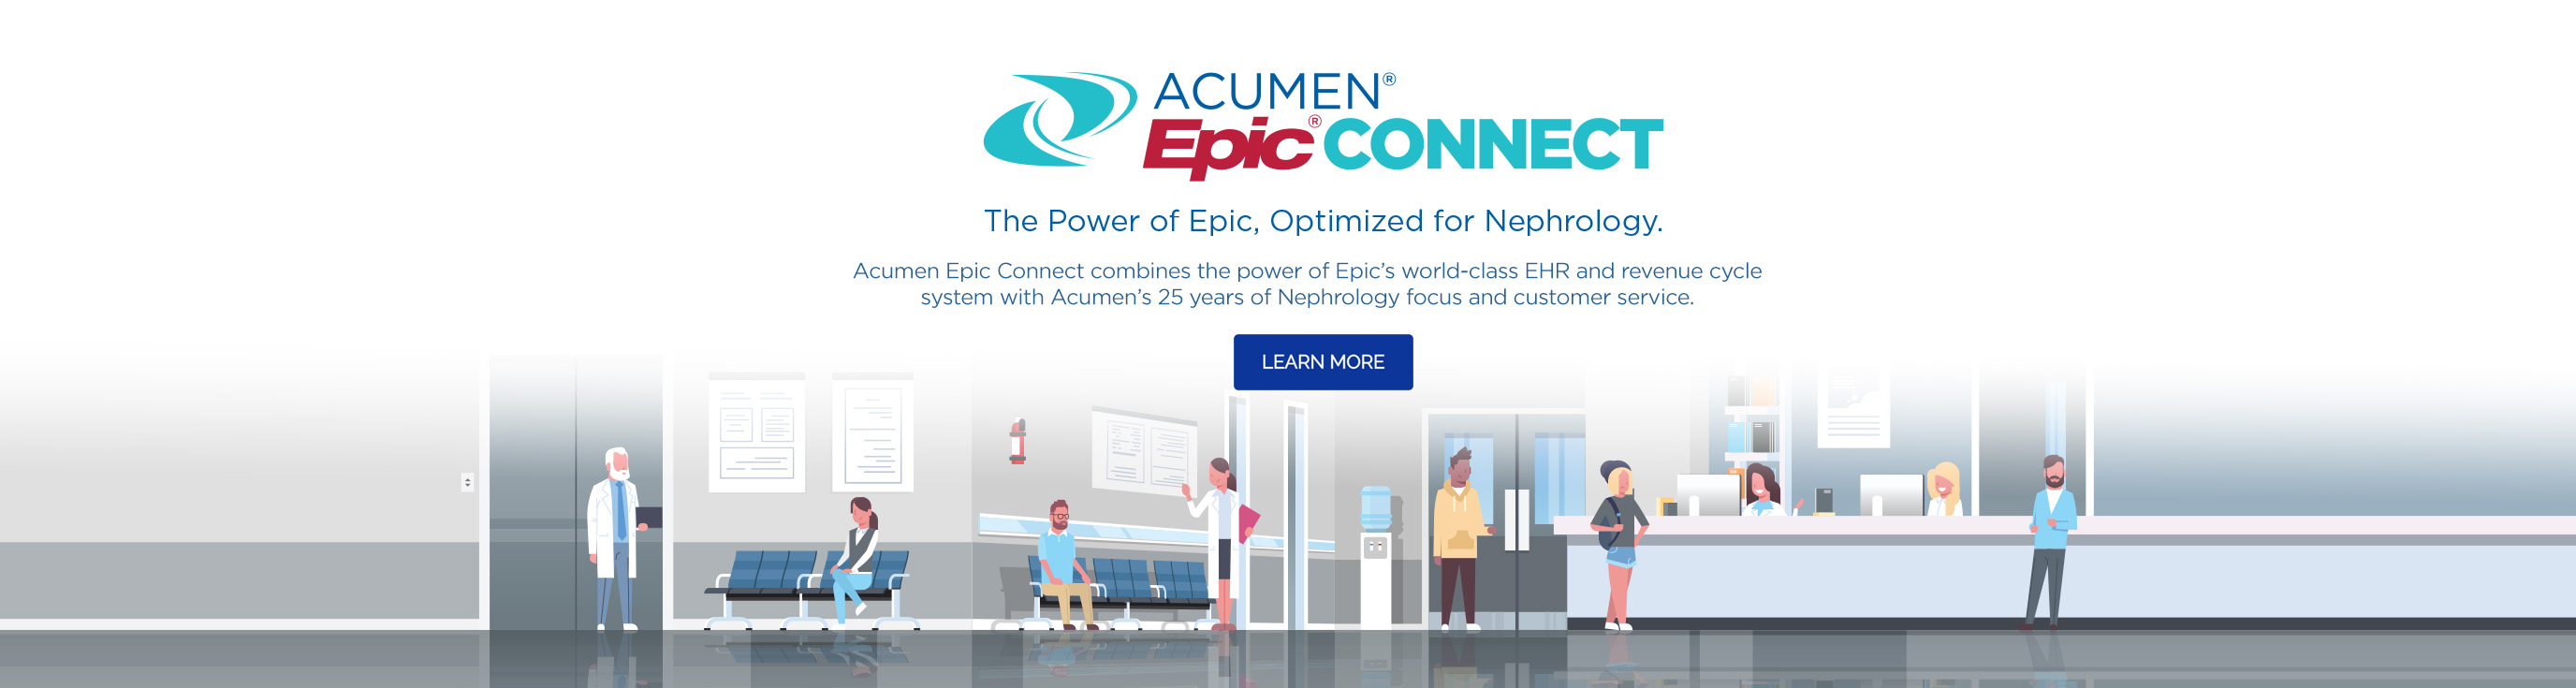 Acumen Epic Connect